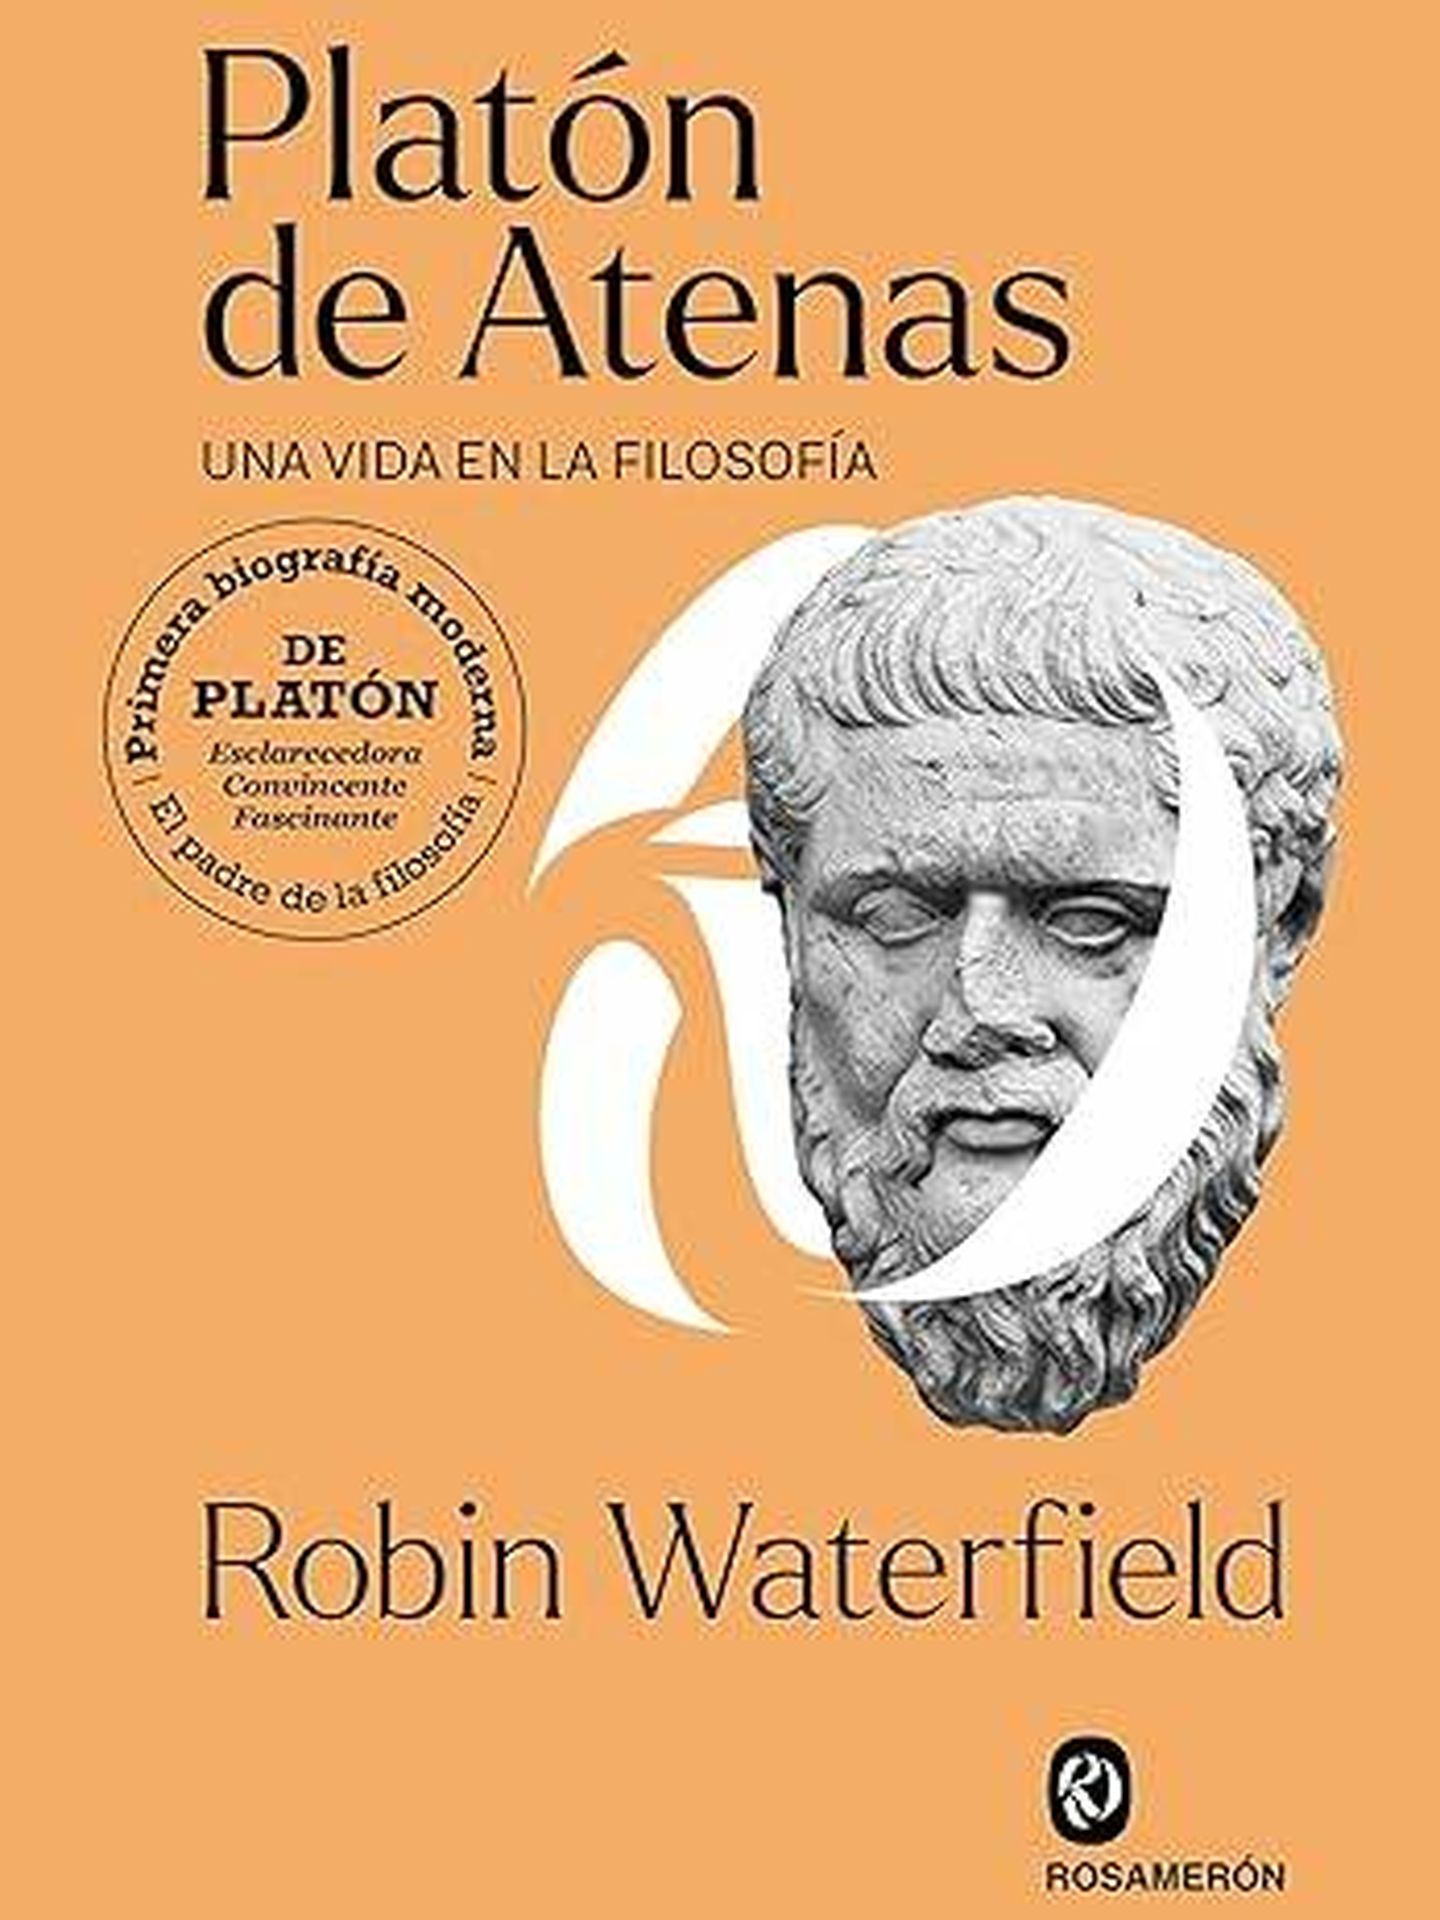 Portada de 'Platón de Atenas' de Robin Waterfield,  la primera biografía moderna de Platón. 